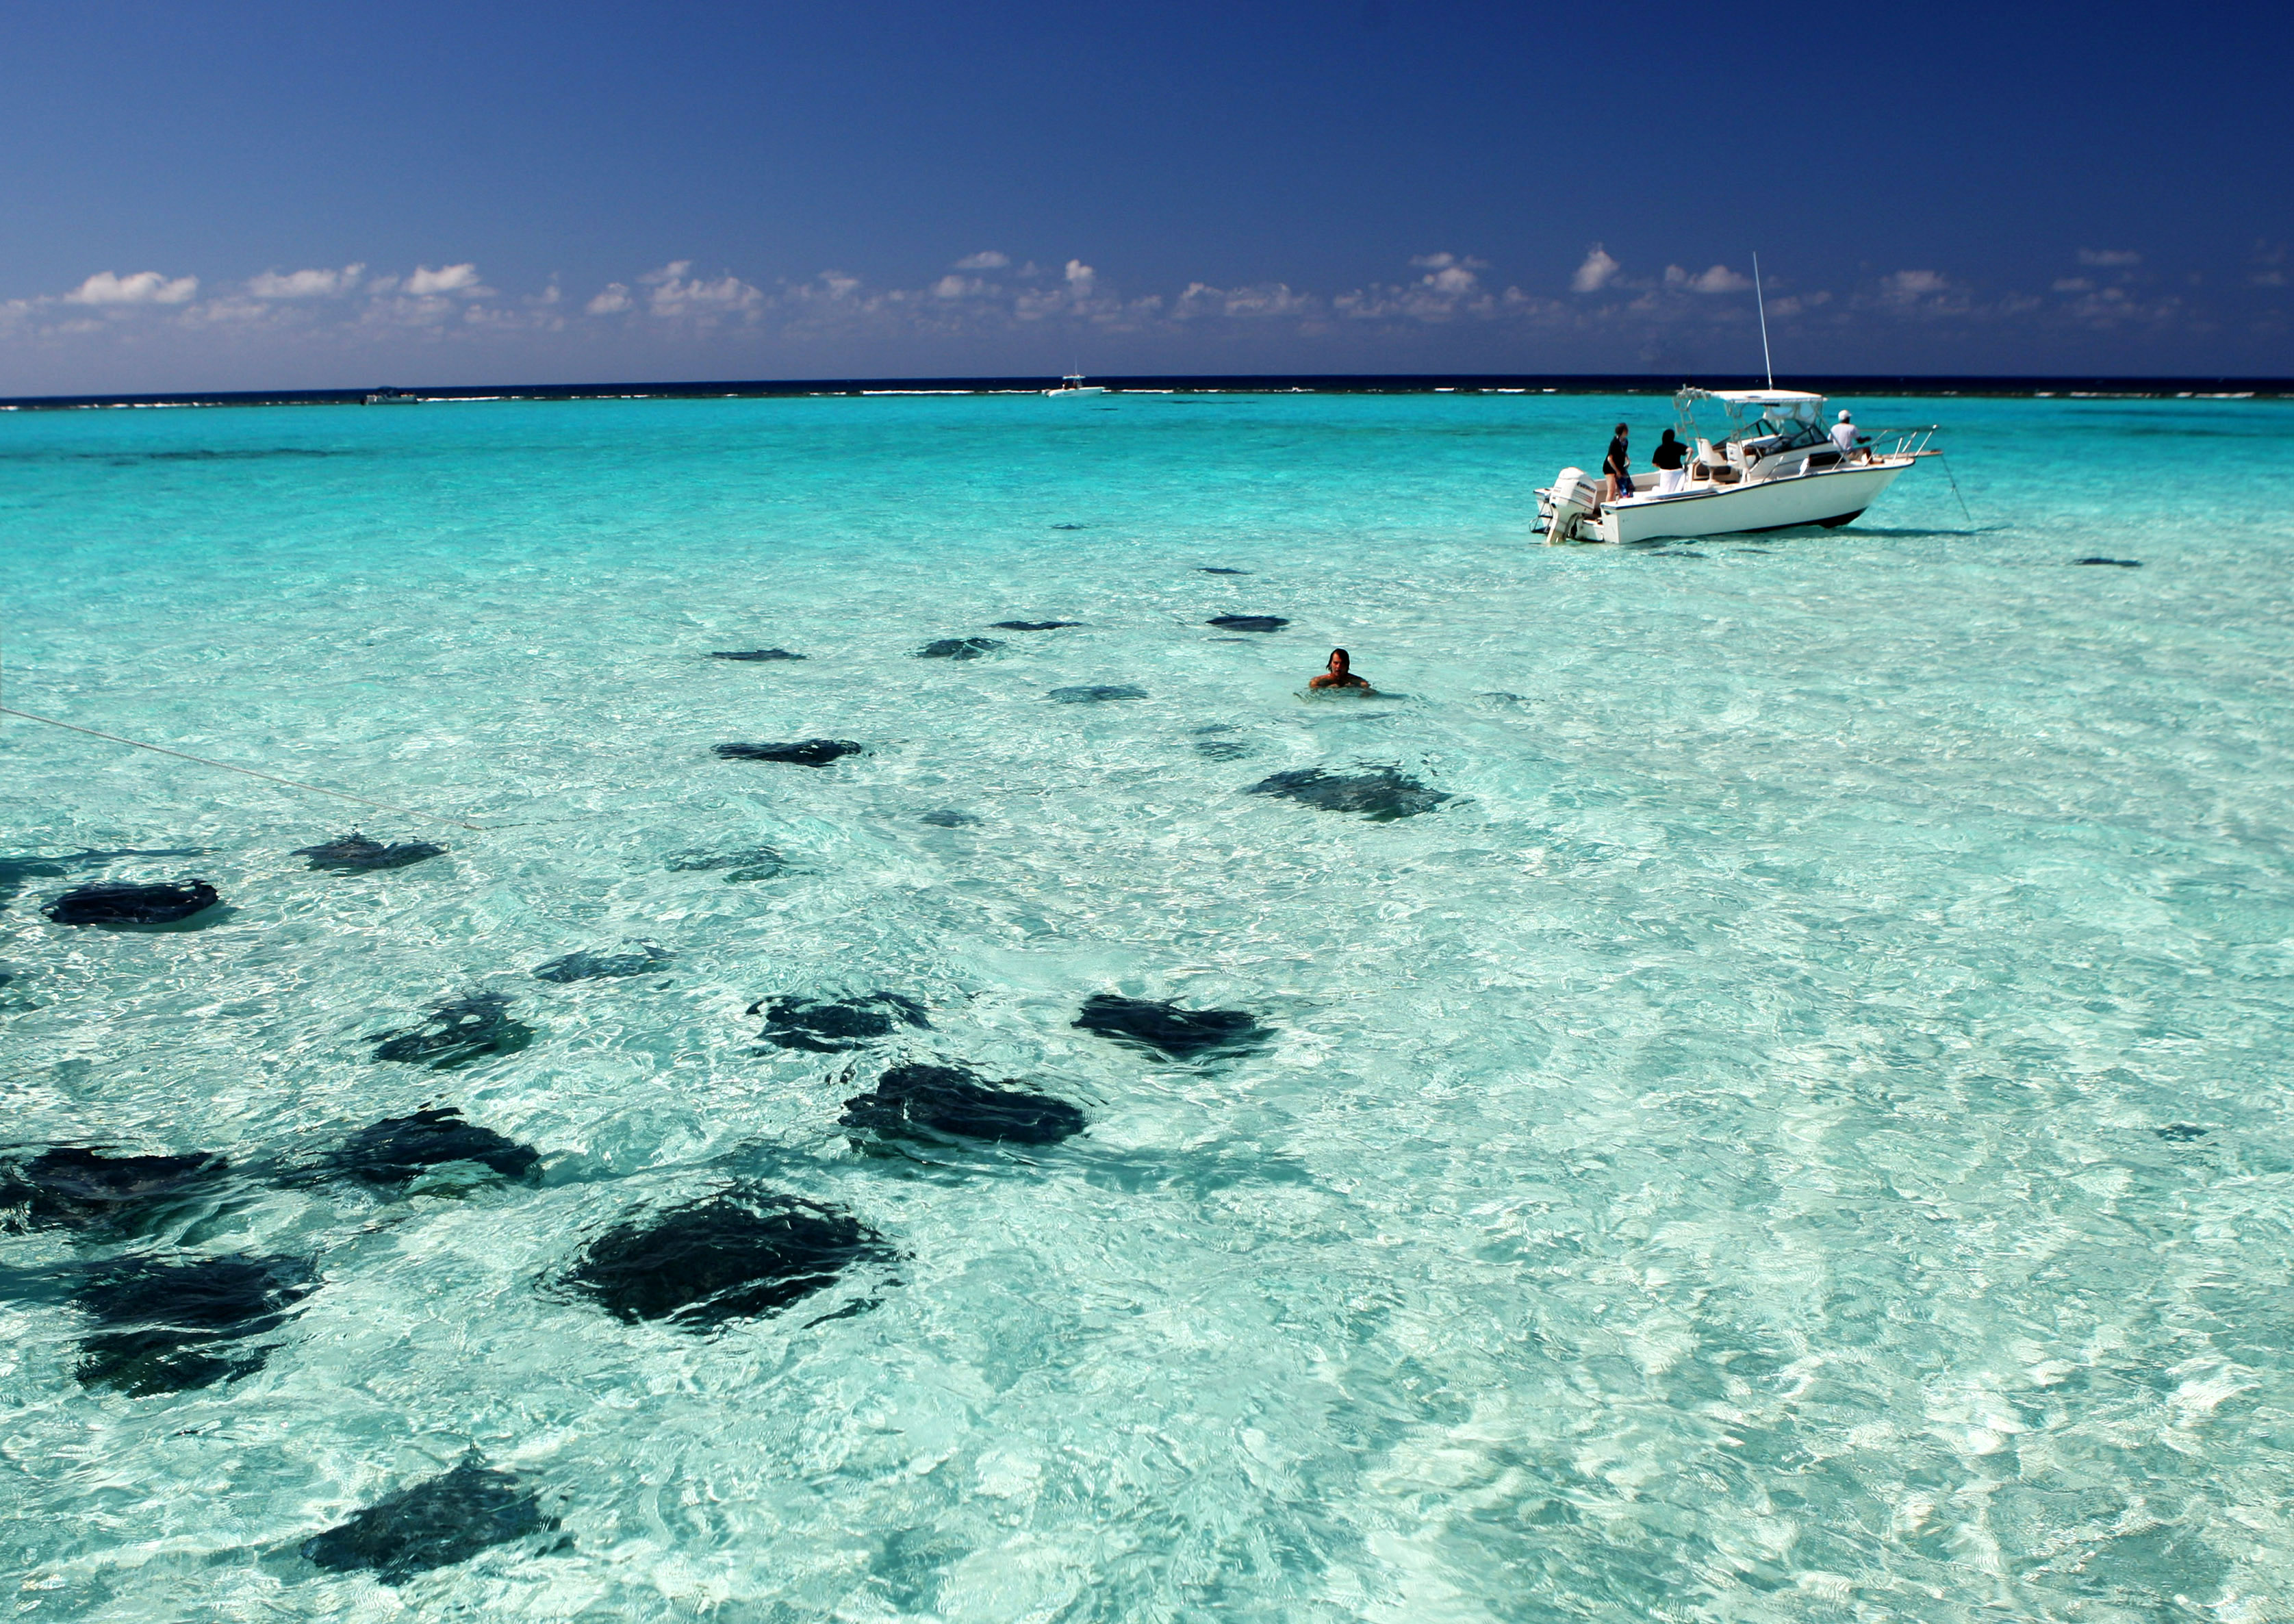 Cayman Islands "Wonderful Holiday" - Gets Ready